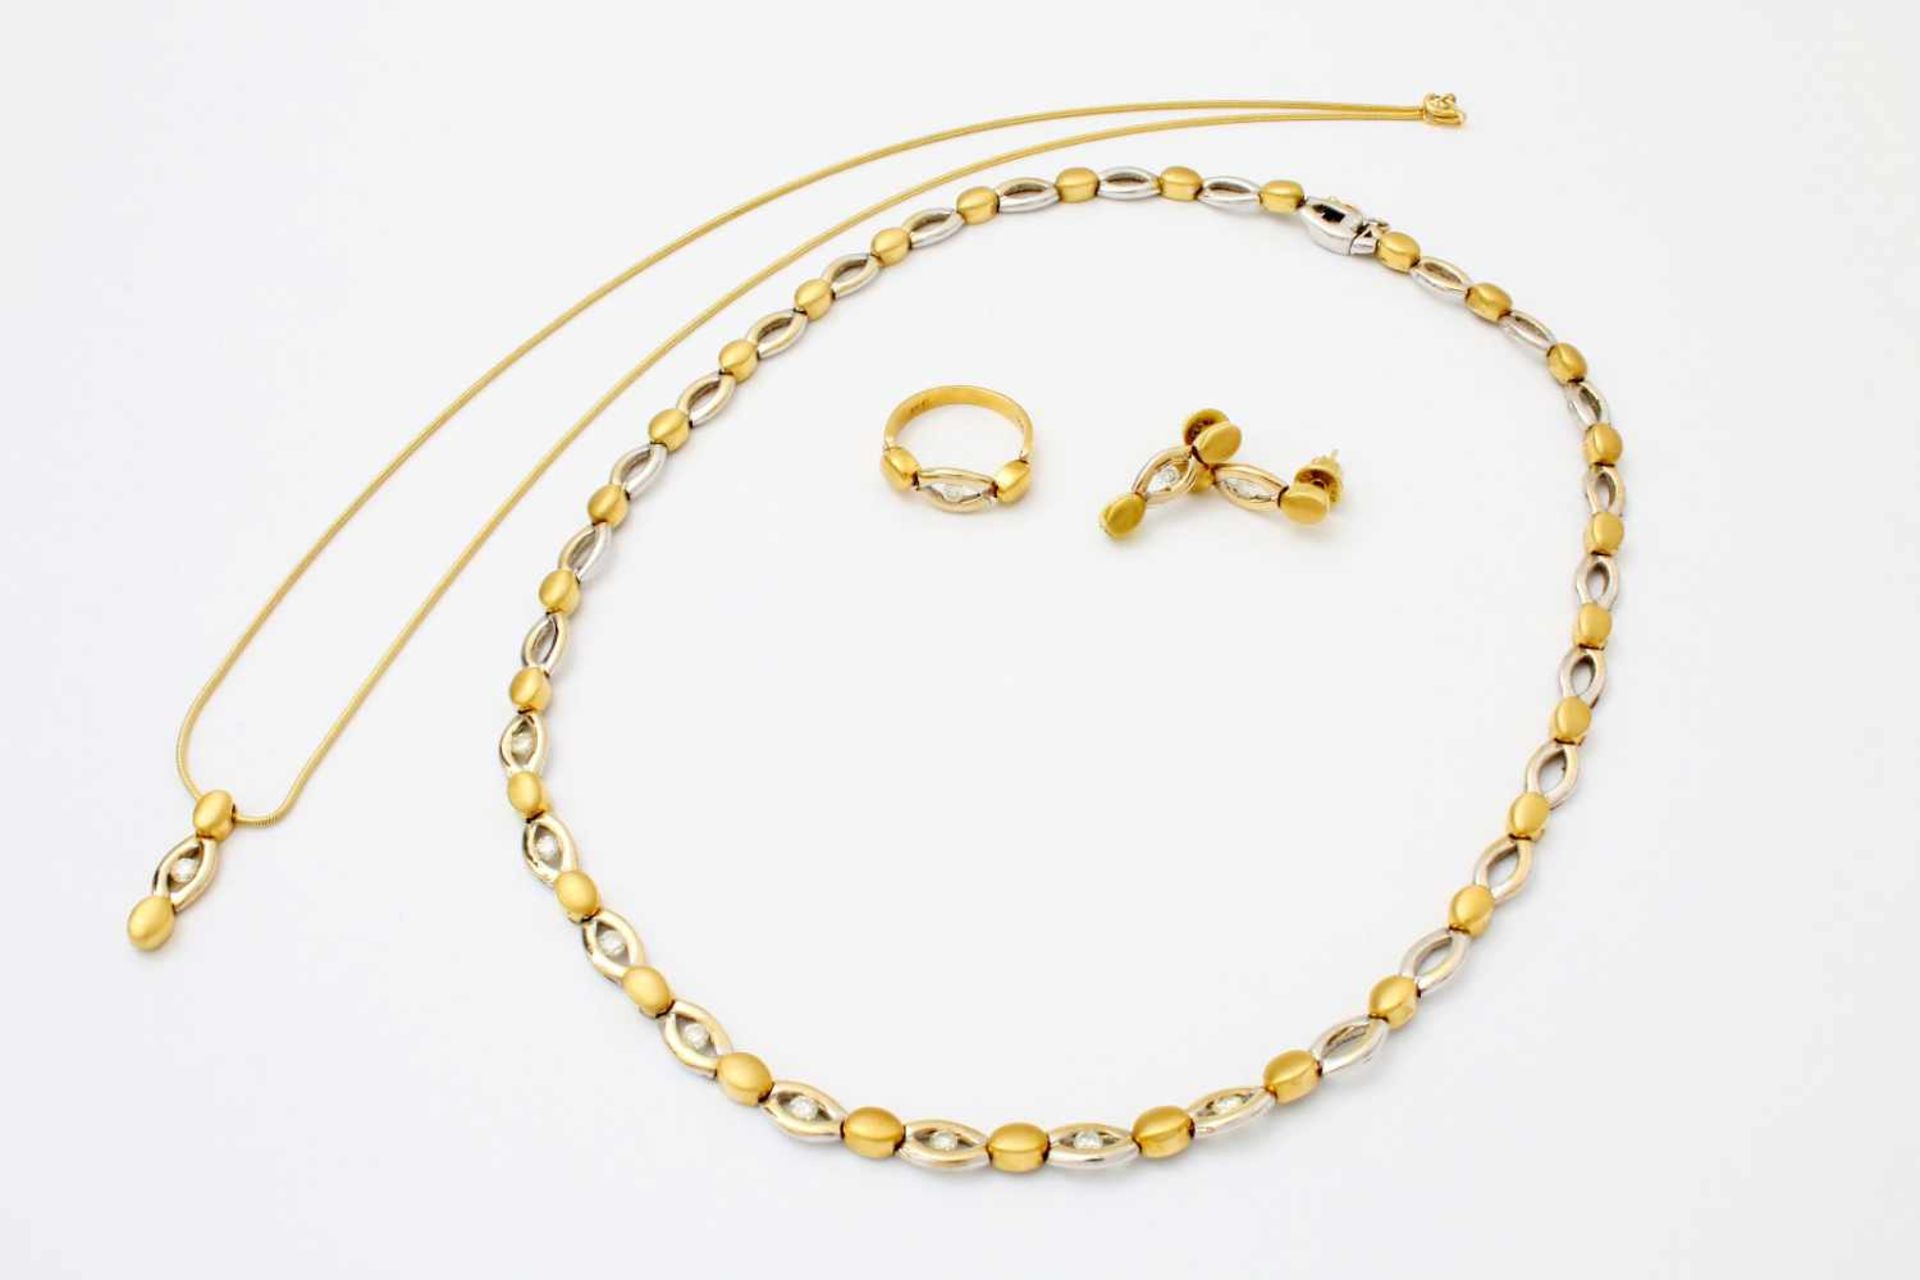 Gelbgold / Weißgold Schmuckset mit Brillanten - Collier, Halskette, Ohrringe, Ring GG / WG 750,